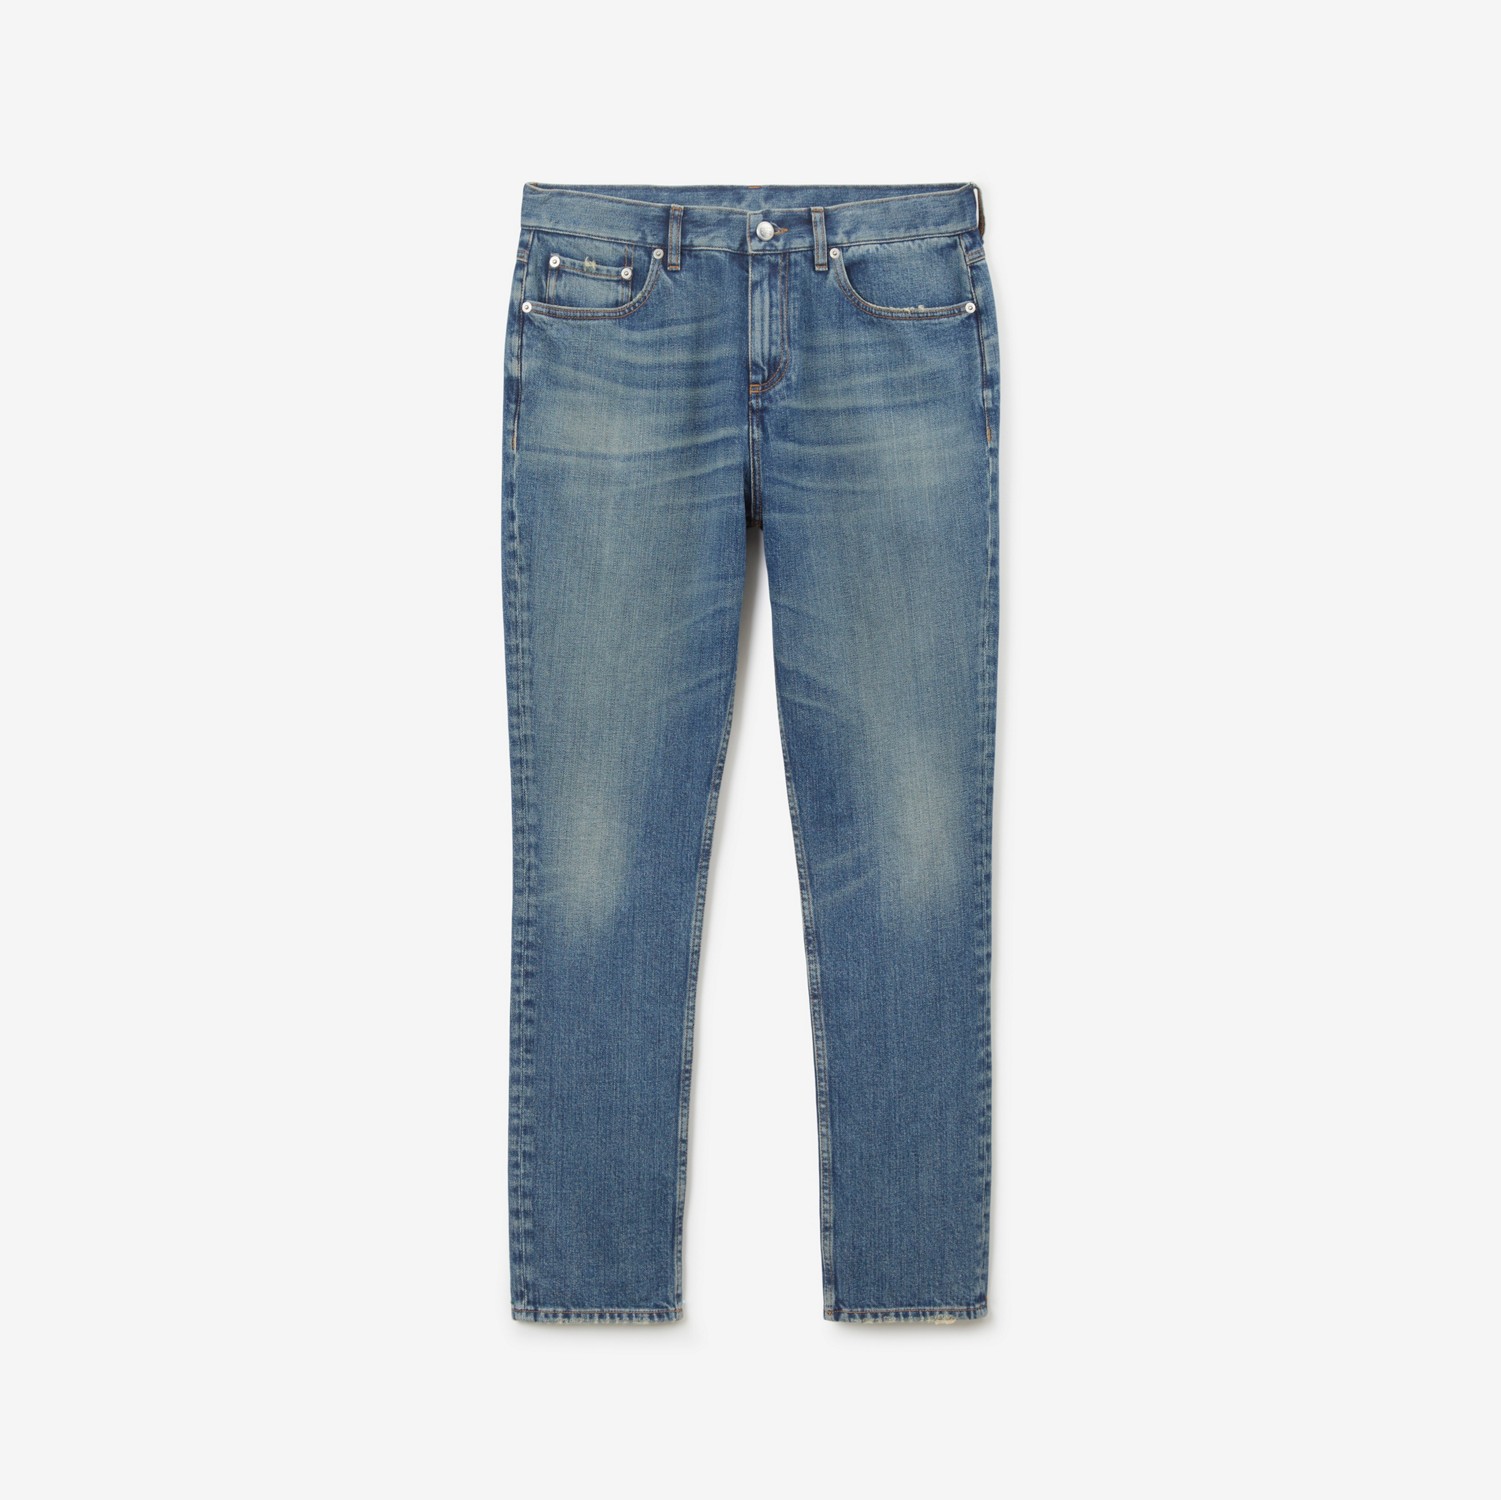 Jeans aus japanischem Stretchdenim in schmaler Passform (Vintage Denim) - Herren | Burberry®